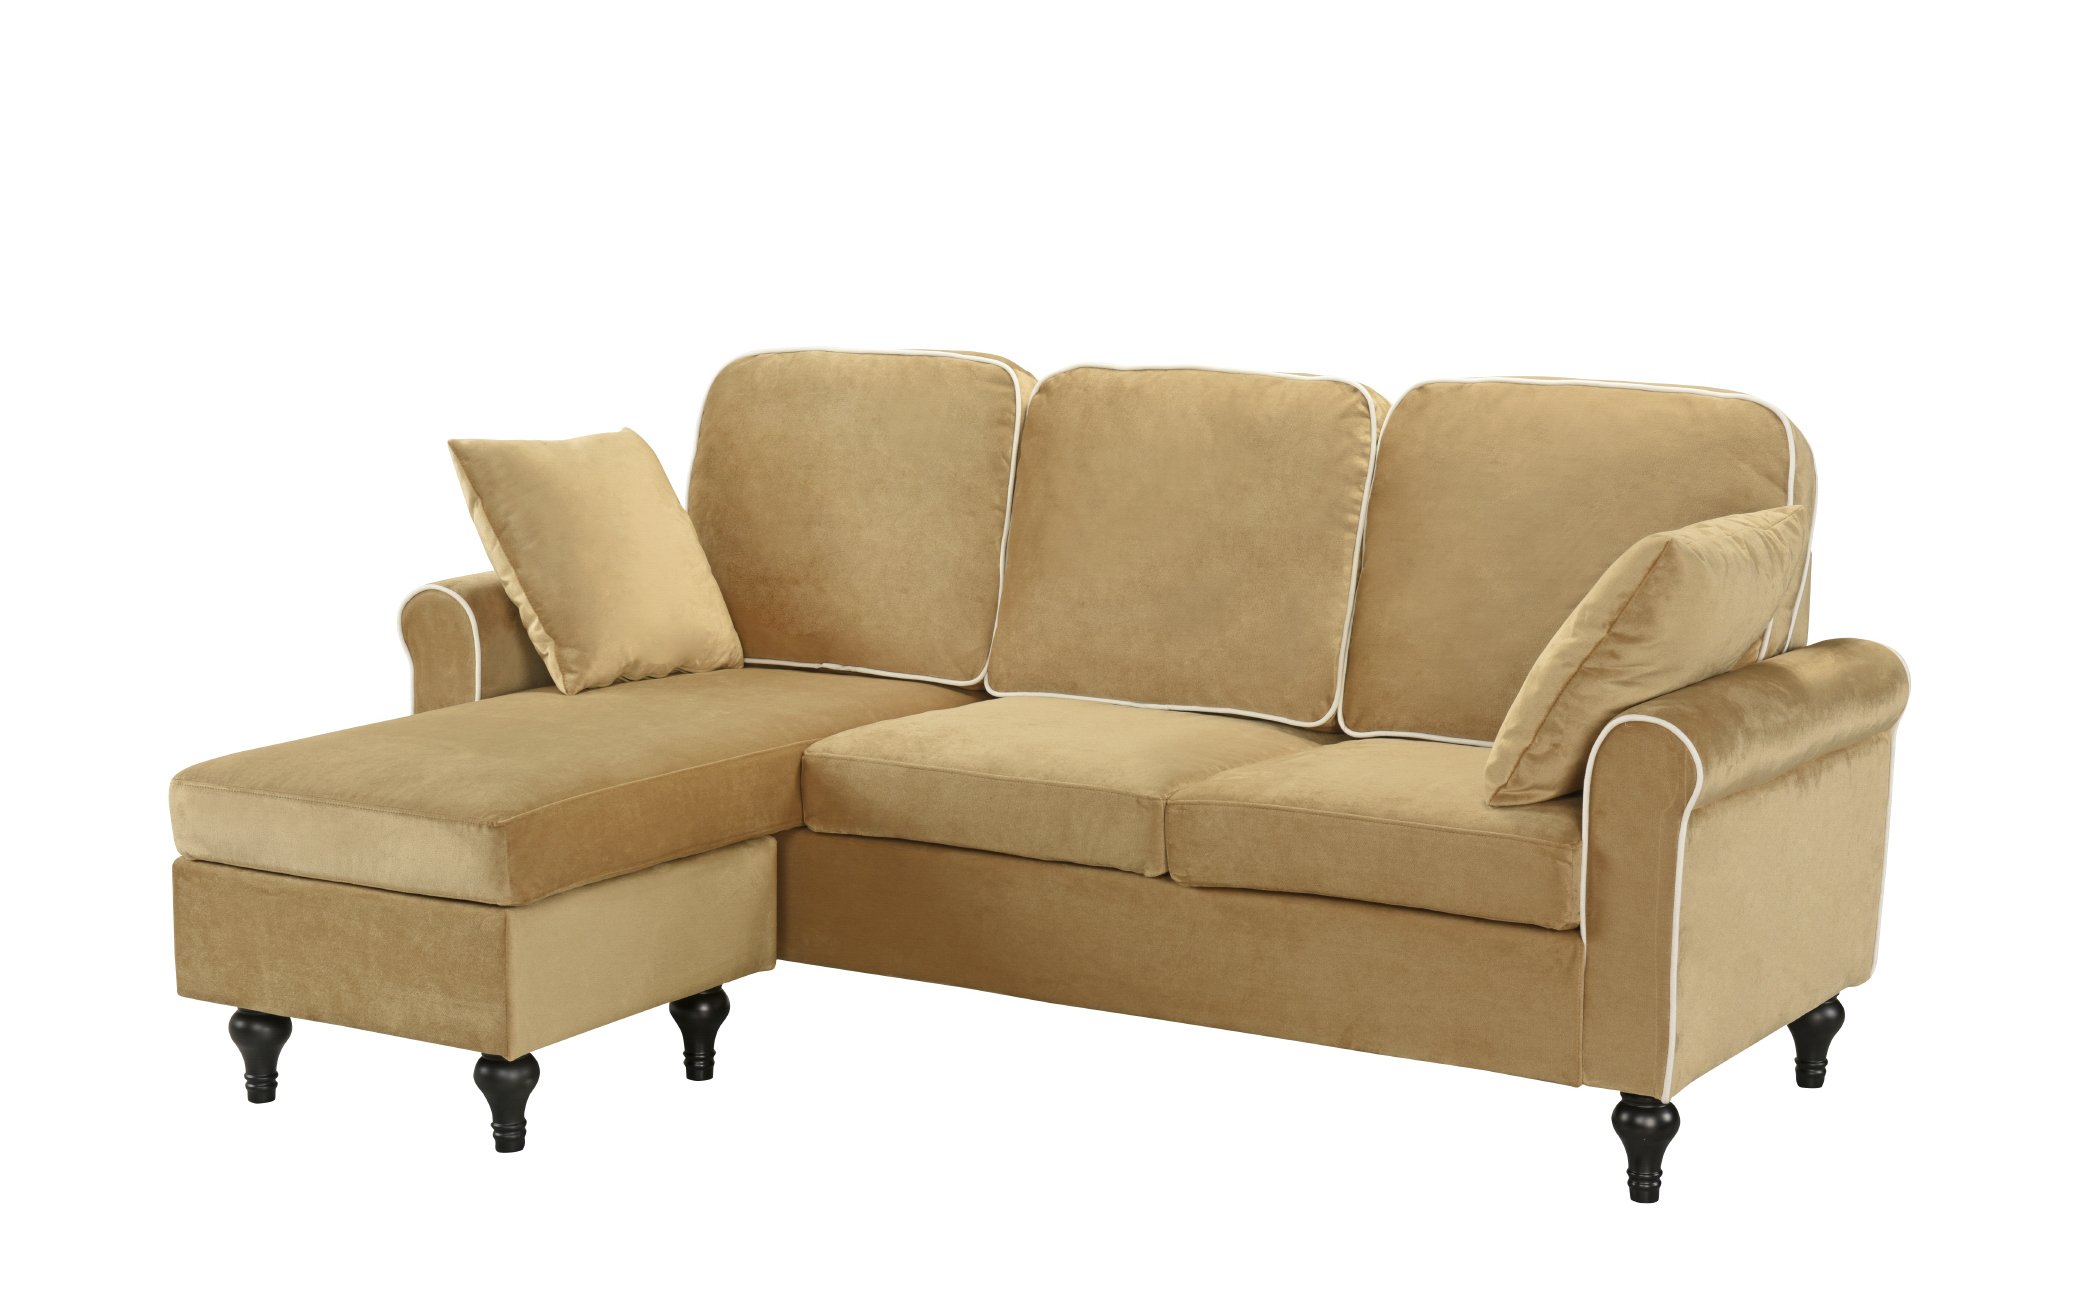 Champagne Small Space Velvet Upholstered Sectional Sofa Reversible